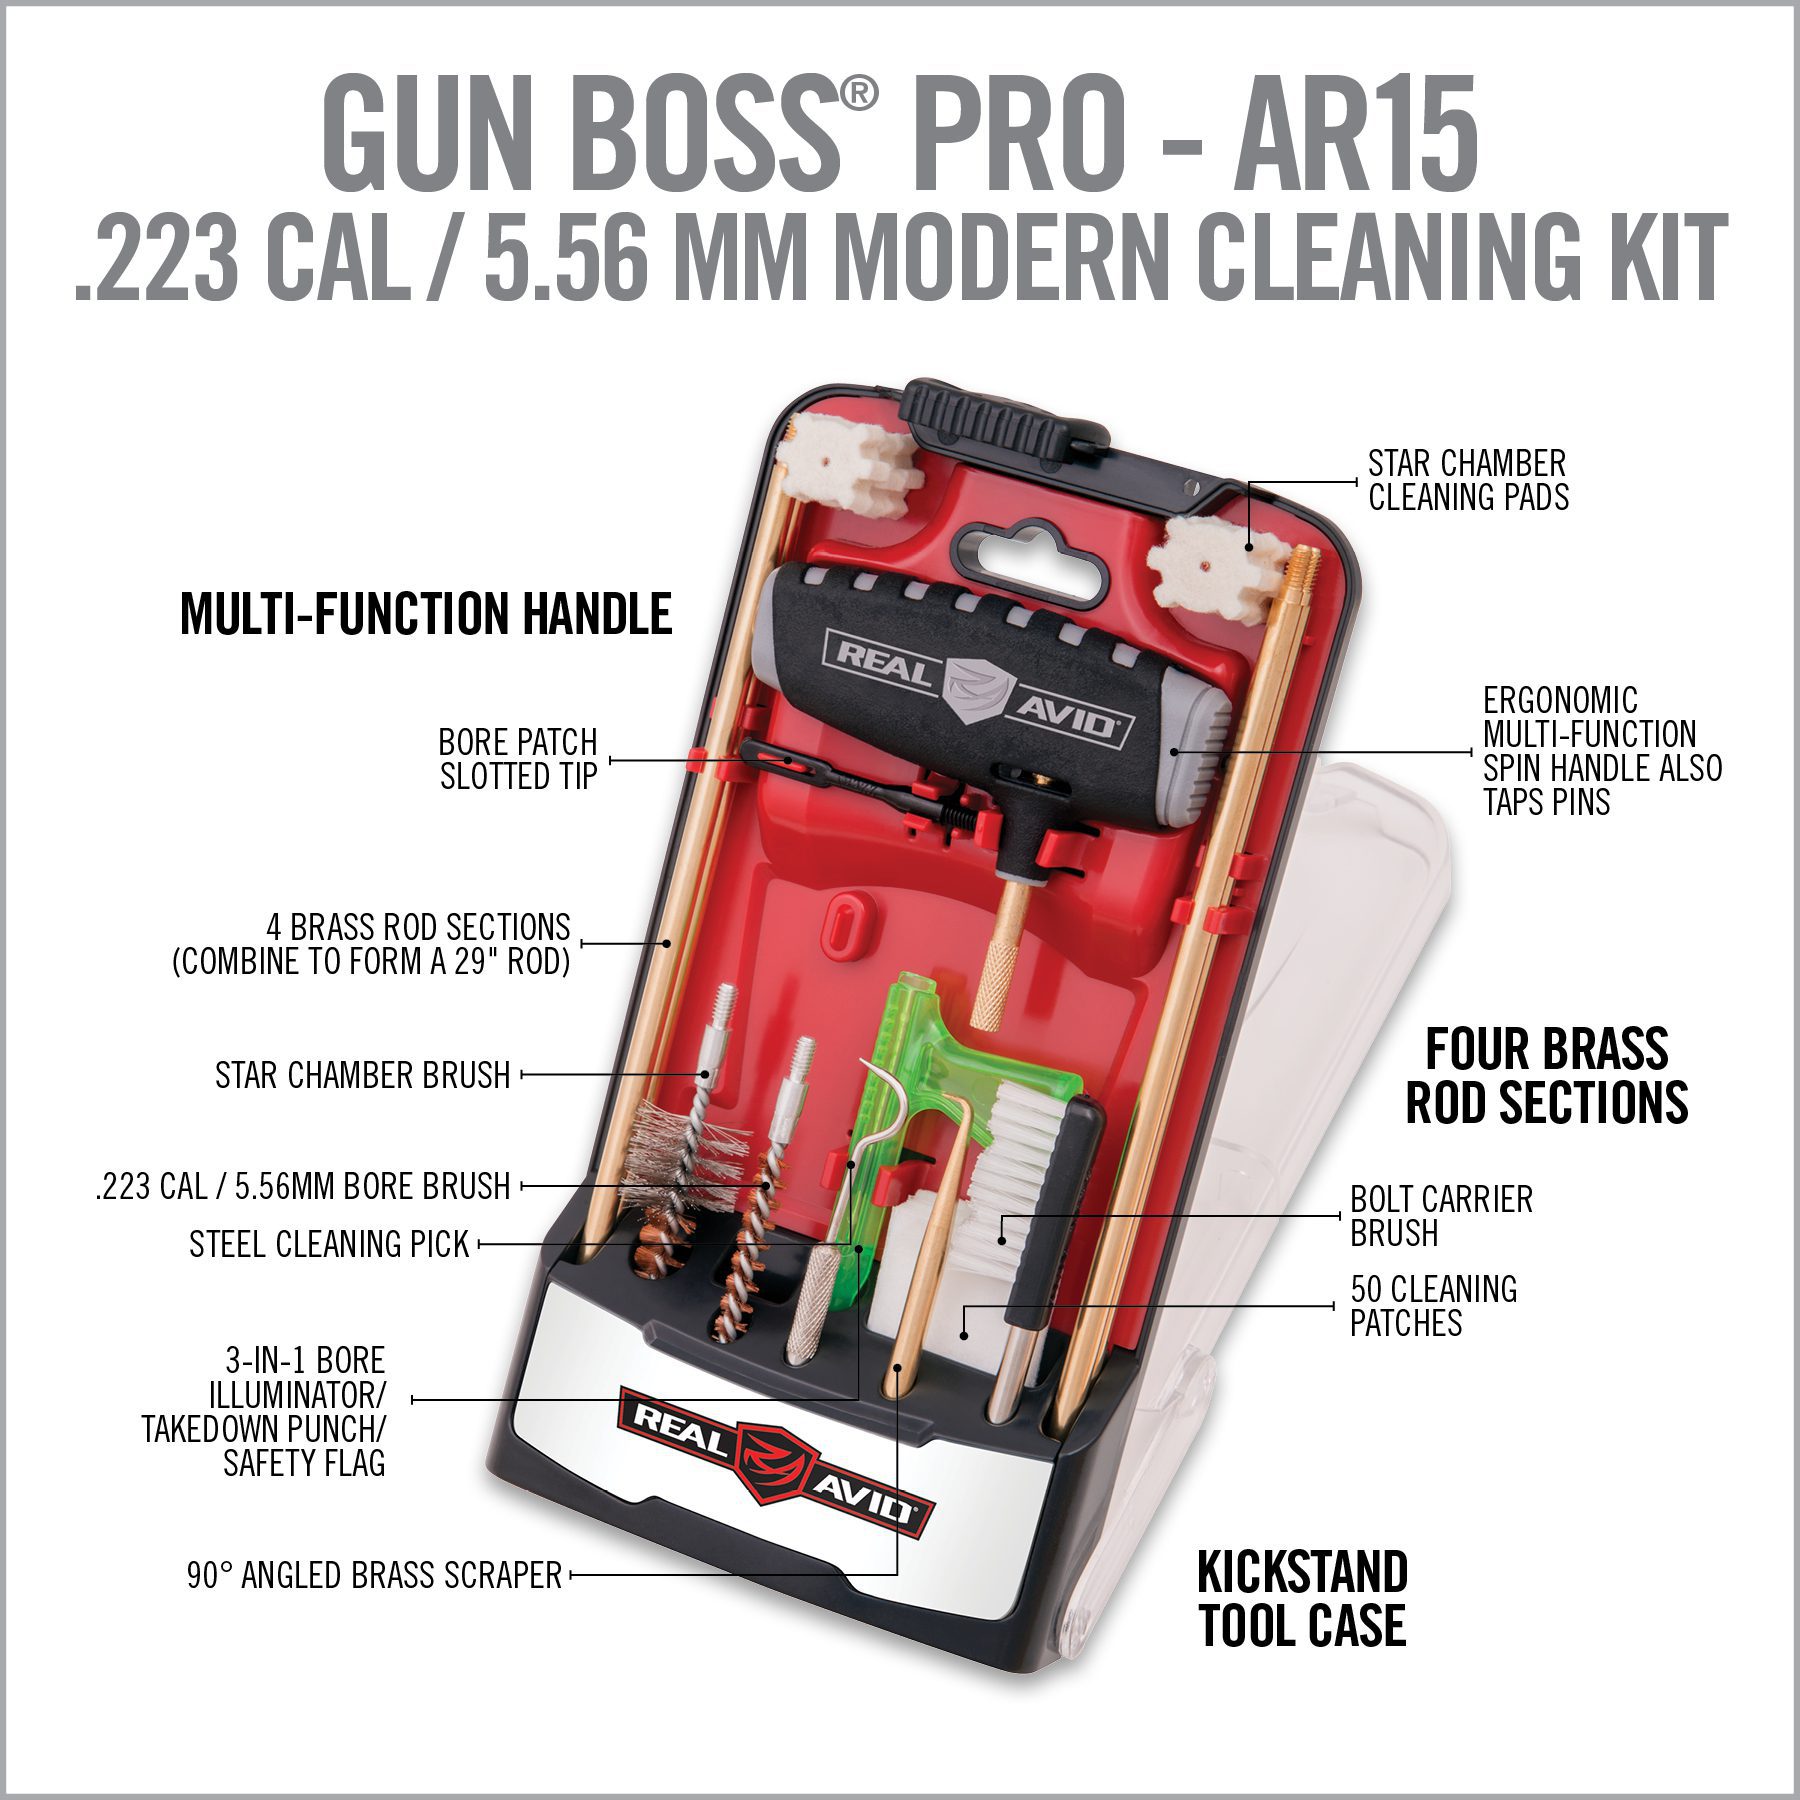 the gun boss pro - art5 is an excellent tool for beginners